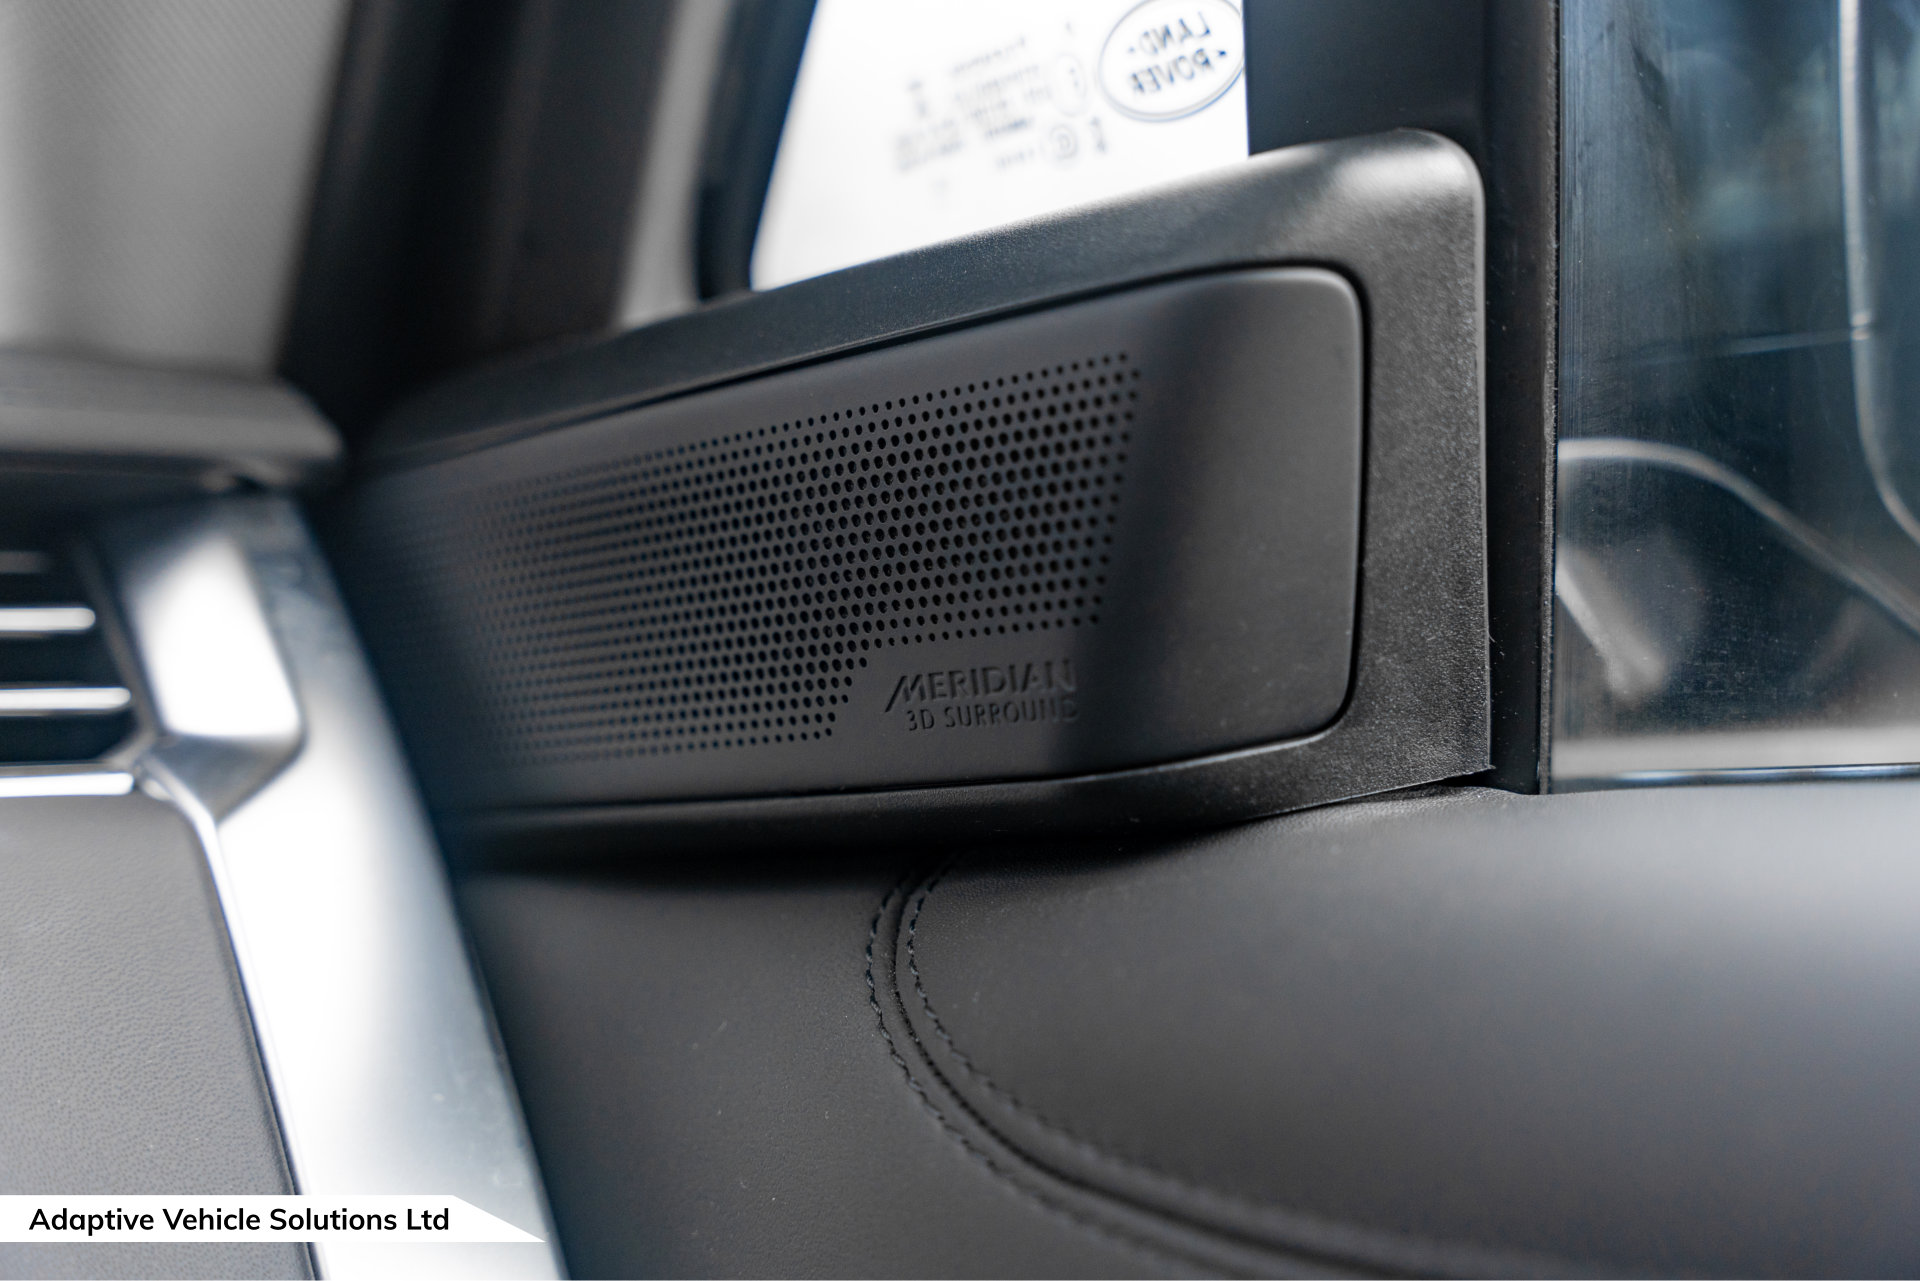 2022 Range Rover D300 HSE Santorini Black meridian speaker door